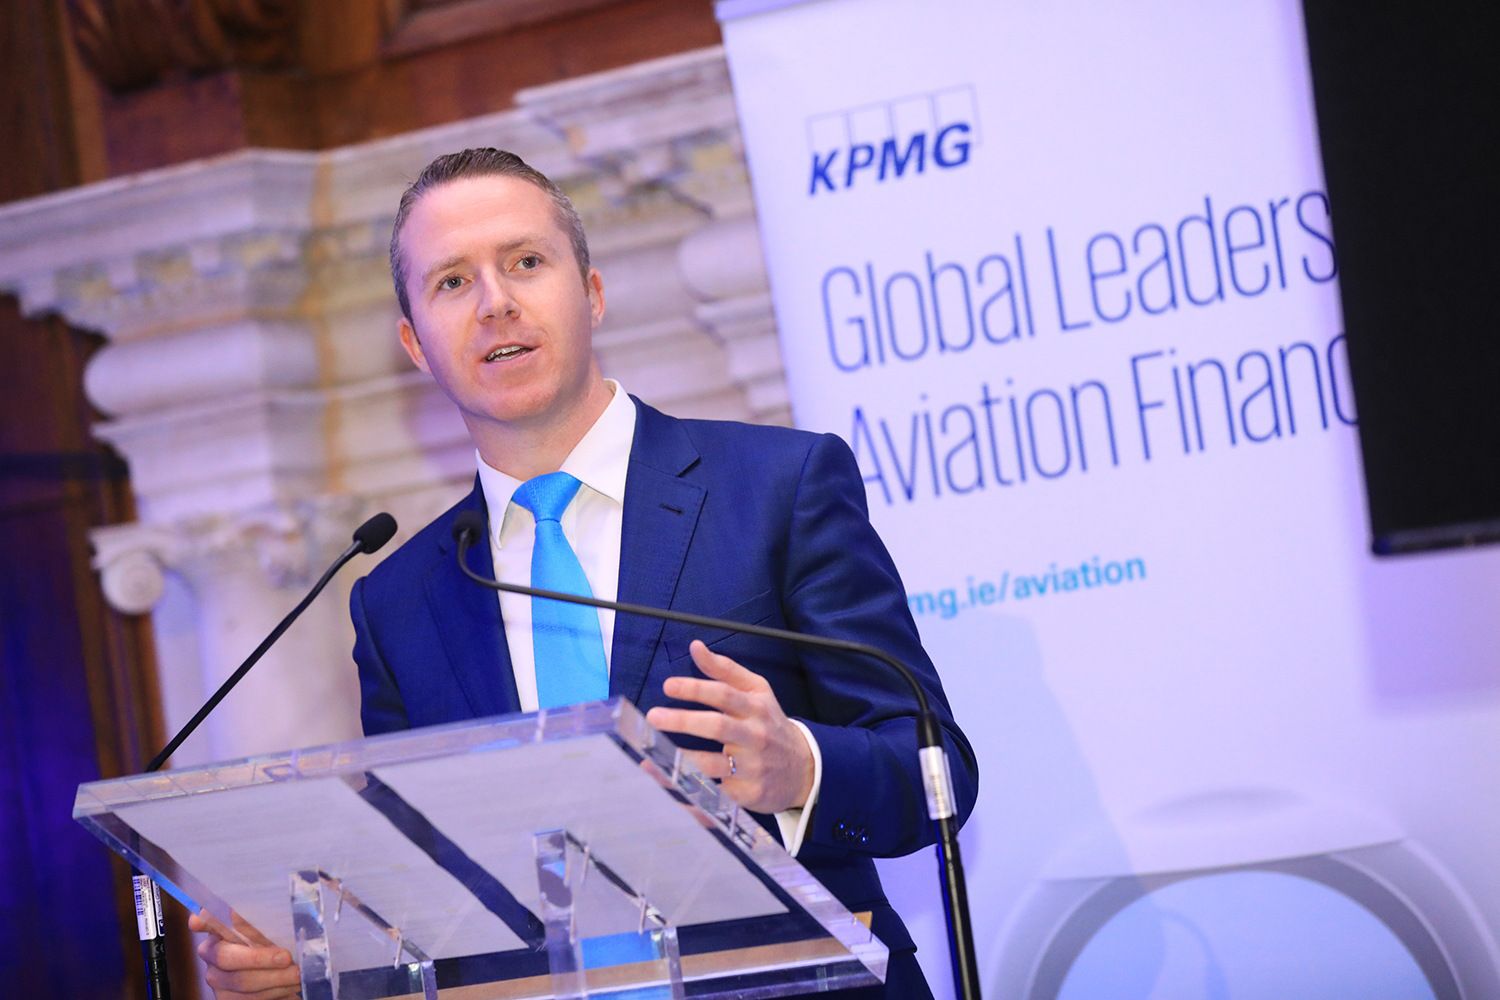 Joe O’Mara, Partner & Head of Aviation Finance at KPMG Ireland